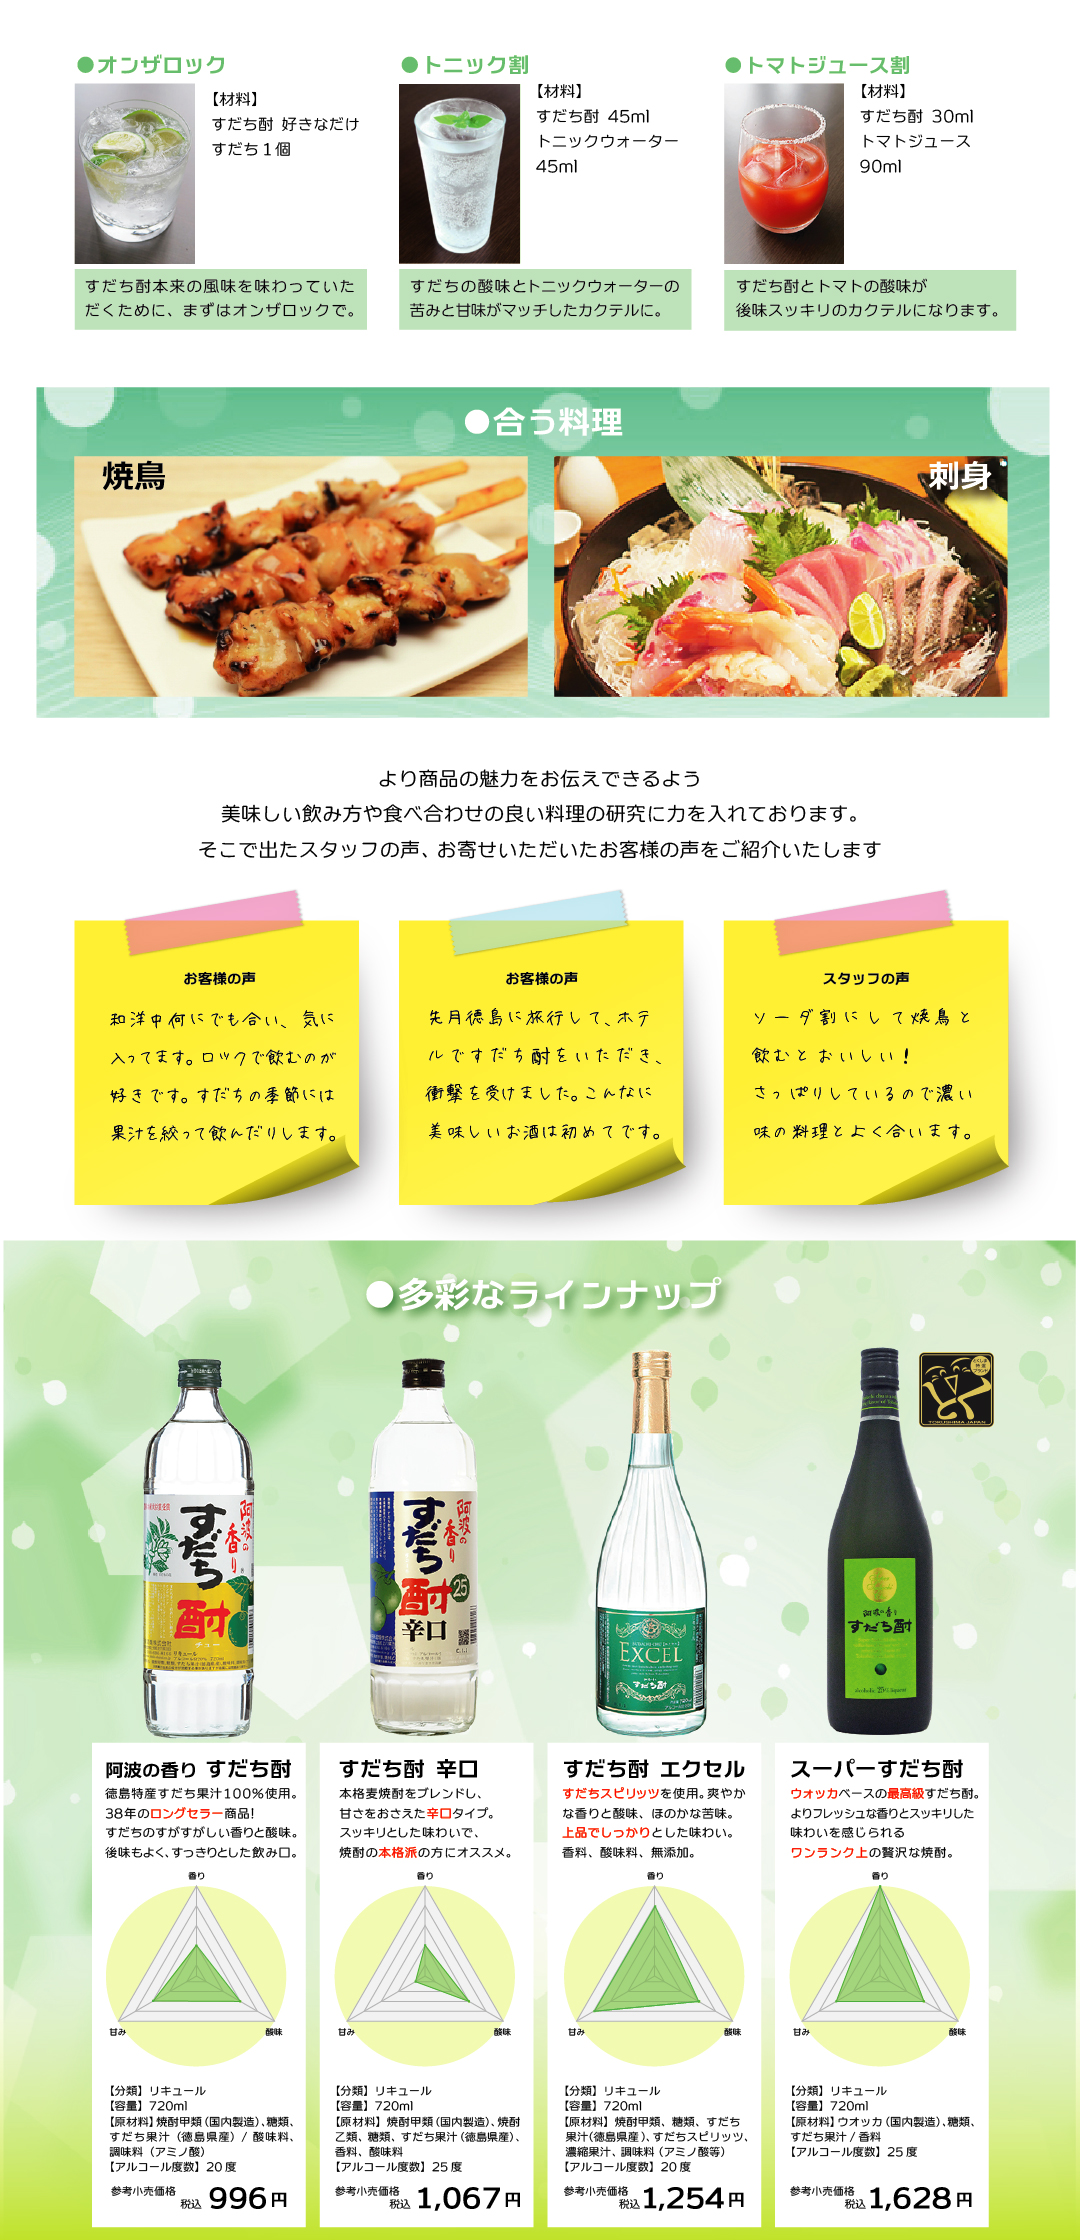 日新酒類「すだち酎」はロングセラーで徳島のお取り寄せとして人気。